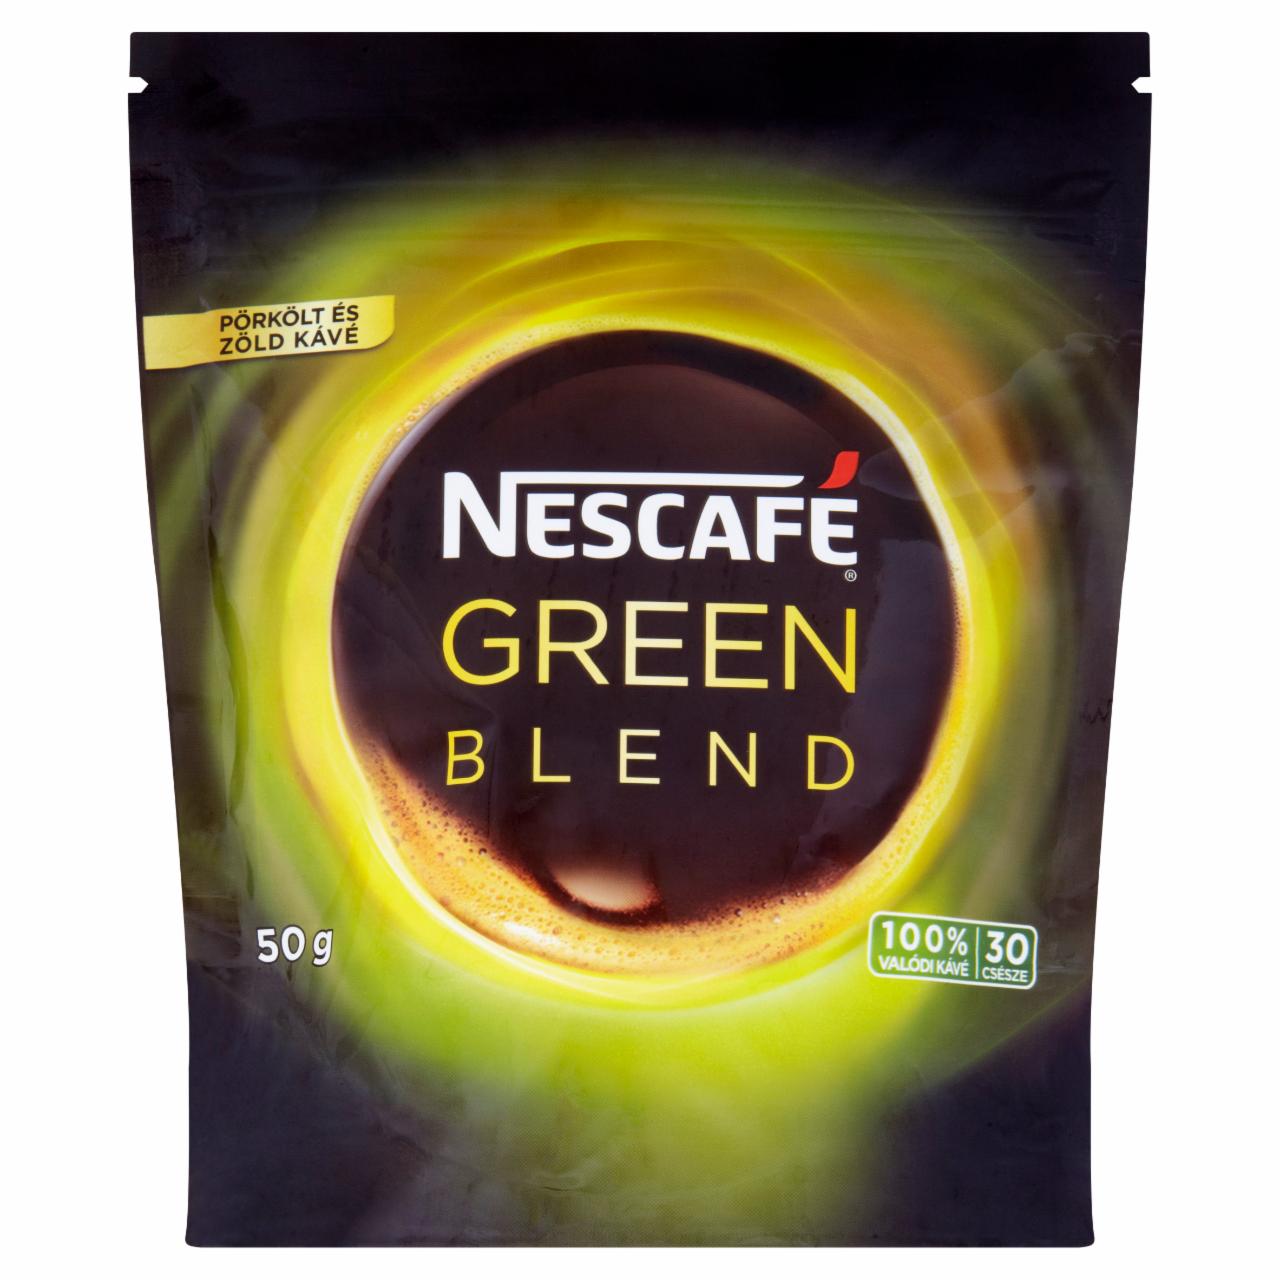 Képek - Nescafé Green Blend azonnal oldódó pörkölt és zöld kávé 50 g